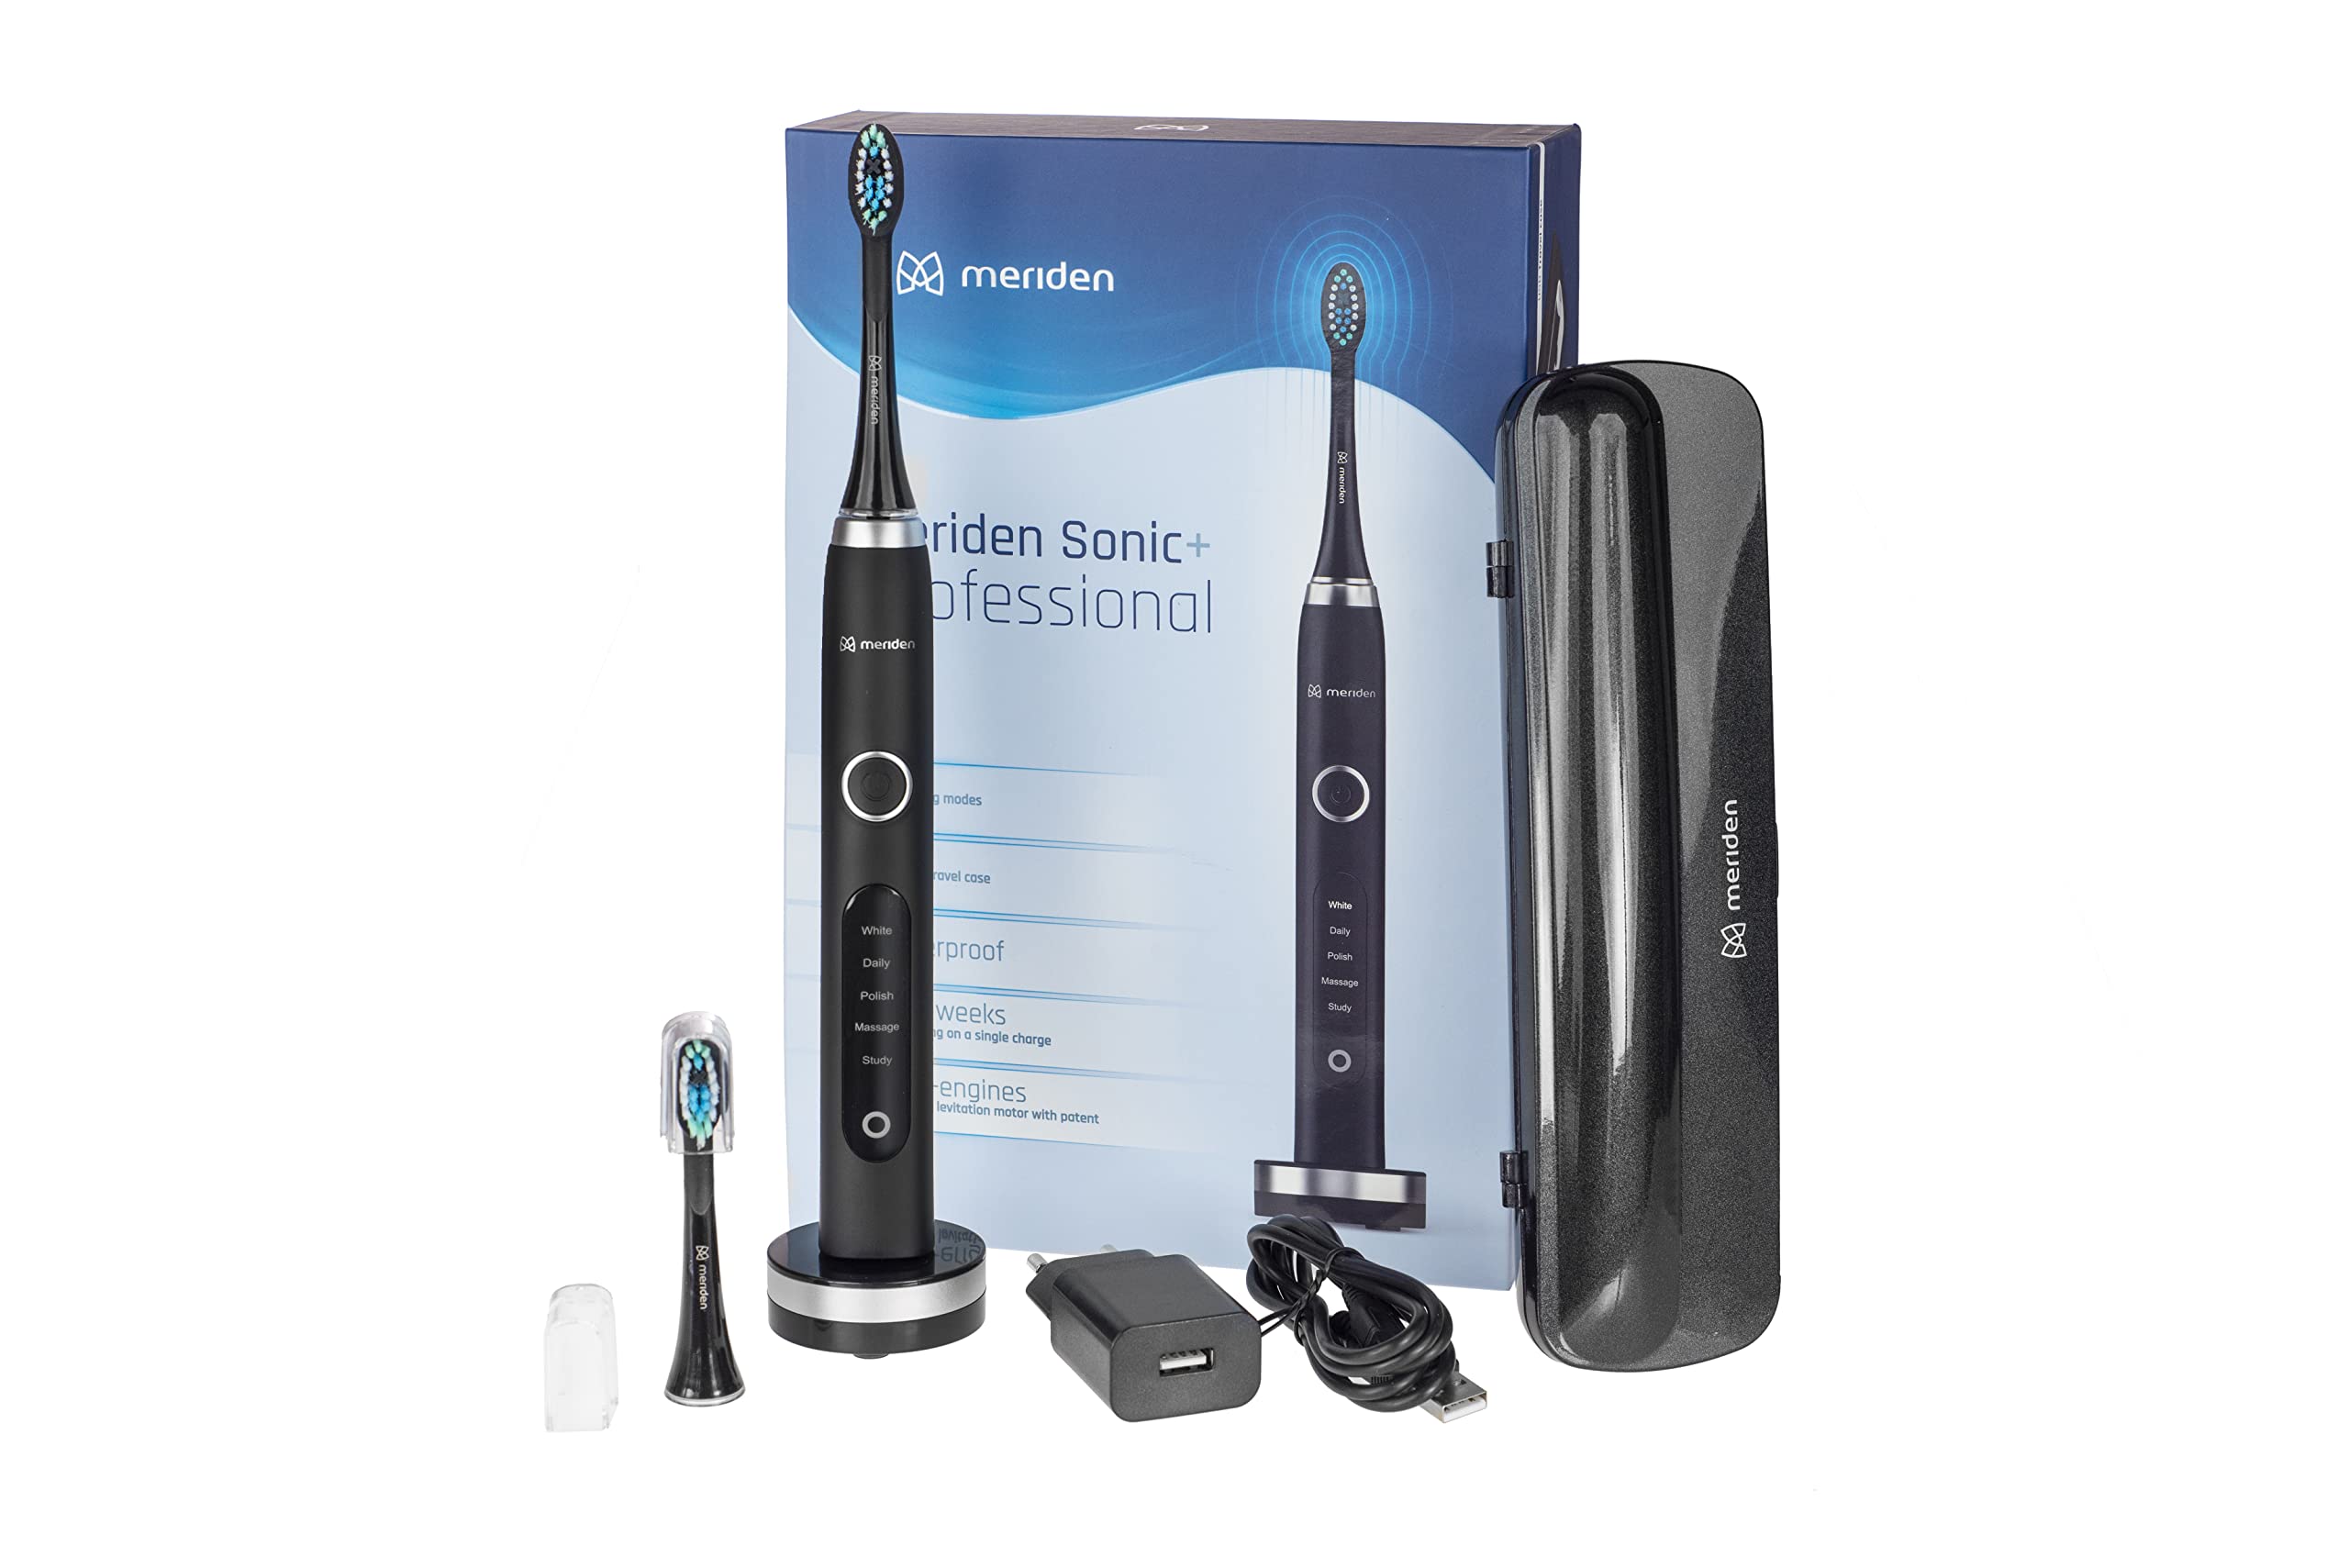 Meriden Elektrische Schallzahnbürste Sonic+ Professional Ultraschall-Zahnbürste mit 2 Zahnbürstenköpfen Reise-Etui 5 Modi Induktionsladestation schwarz